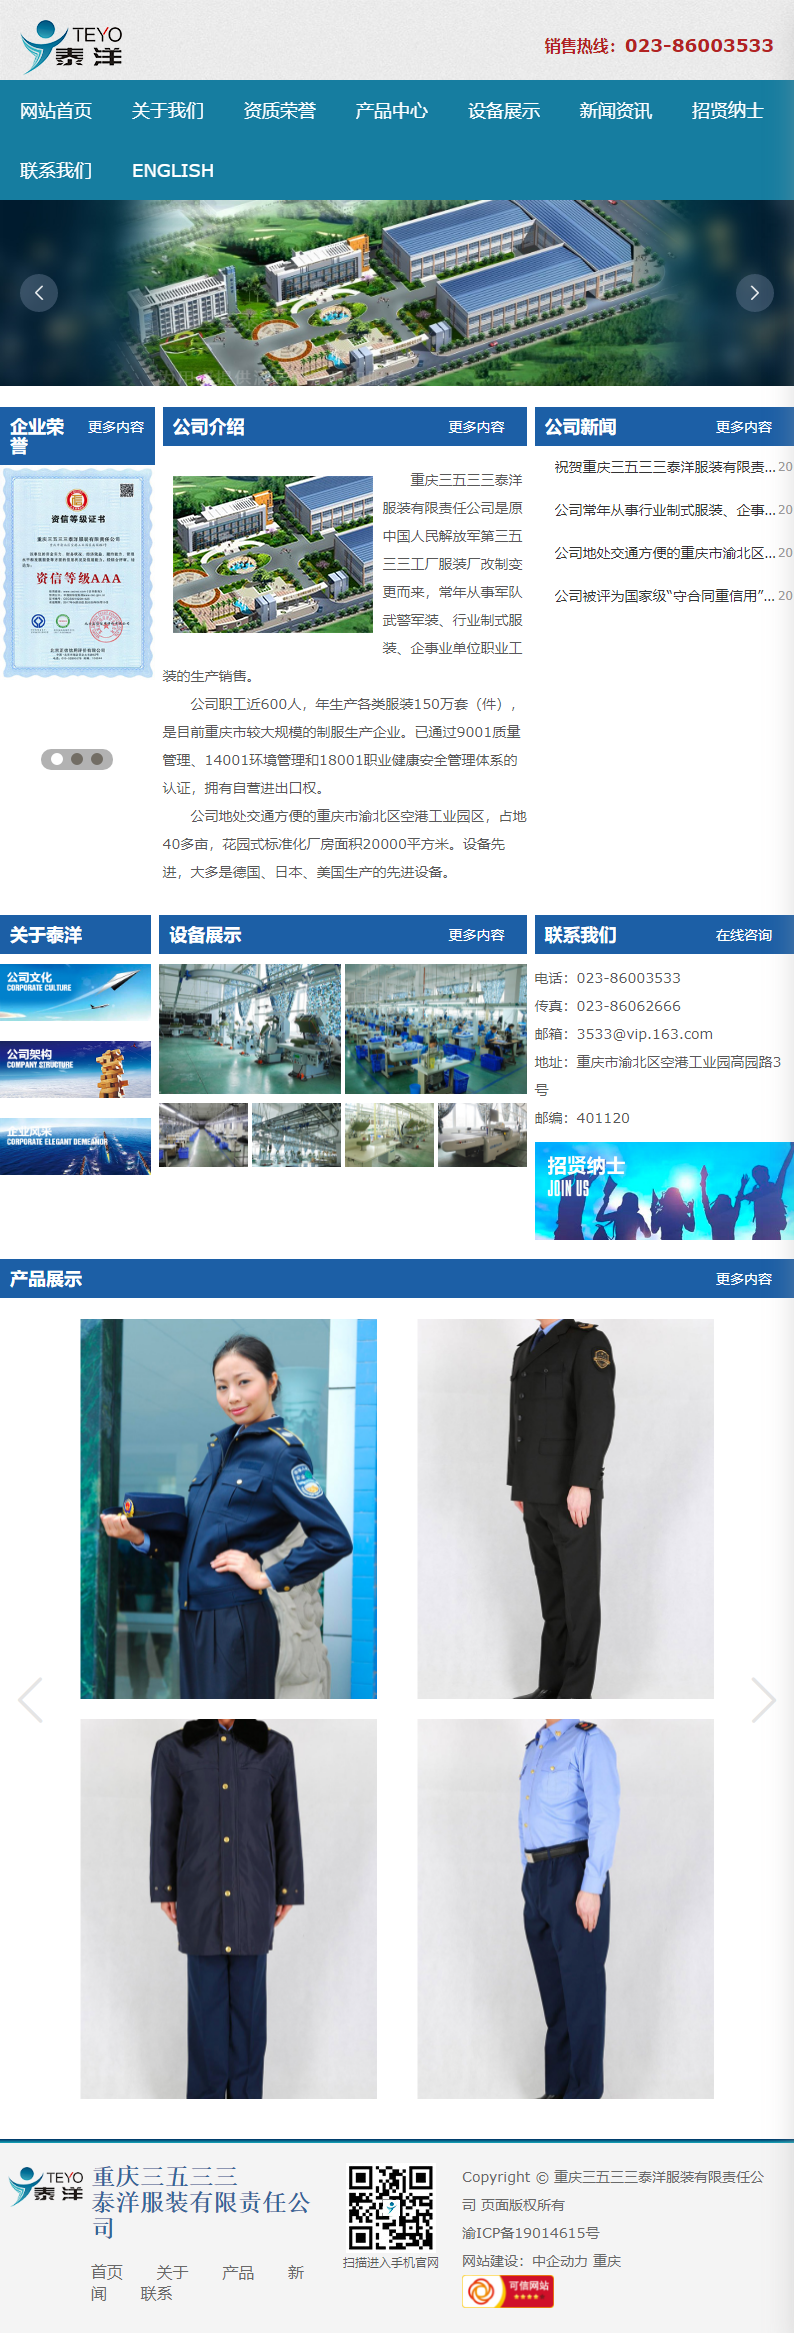 重庆三五三三泰洋服装有限责任公司网站案例